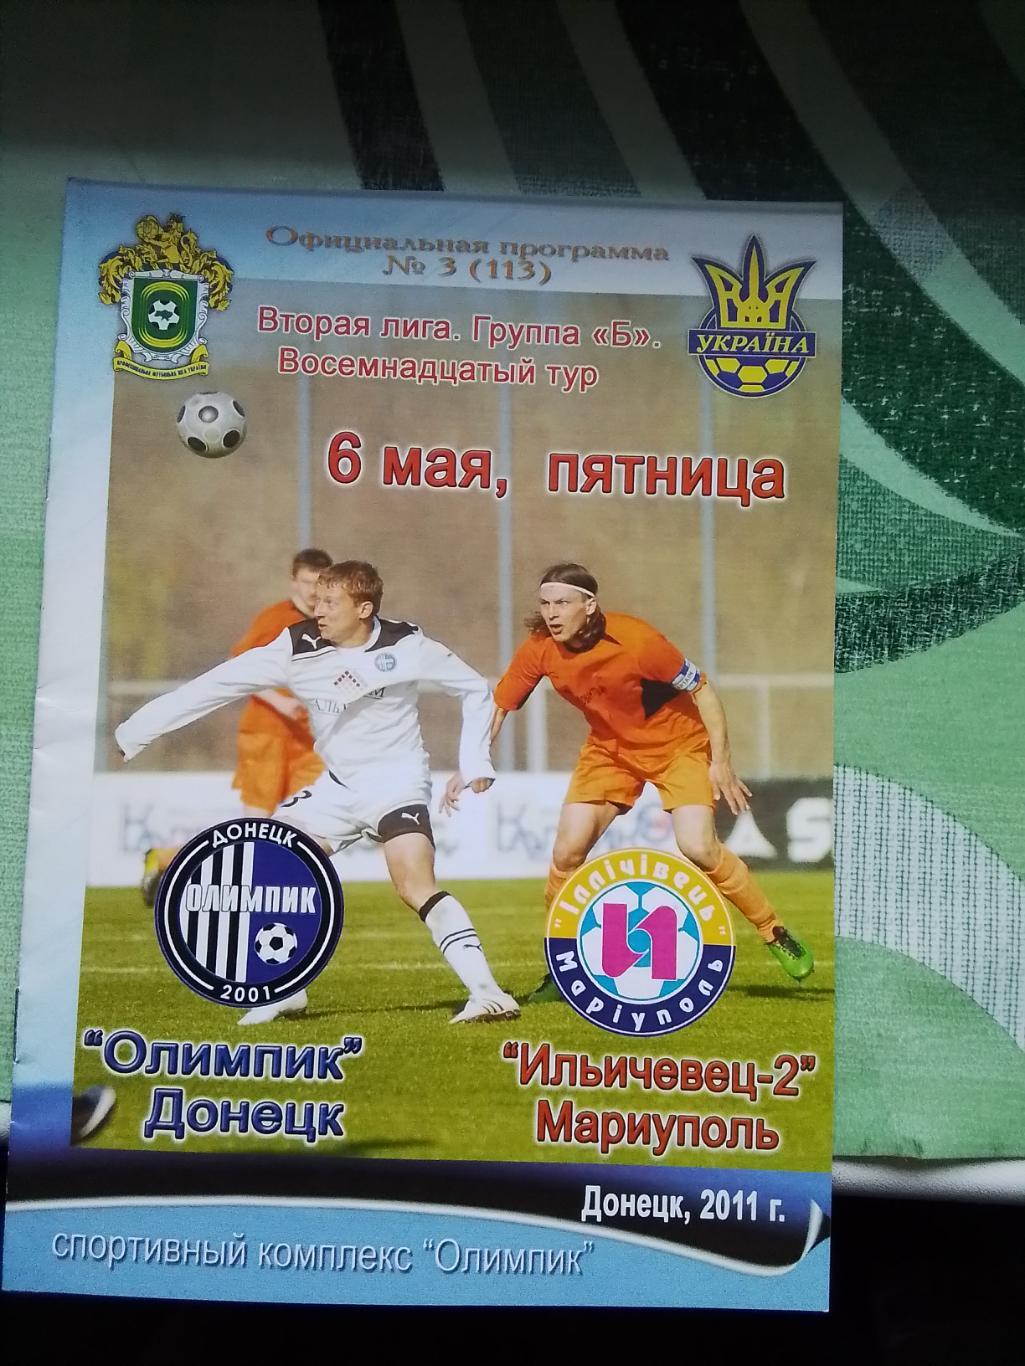 Олимпик Донецк - Ильичёвец-2 Мариуполь 2010 - 2011